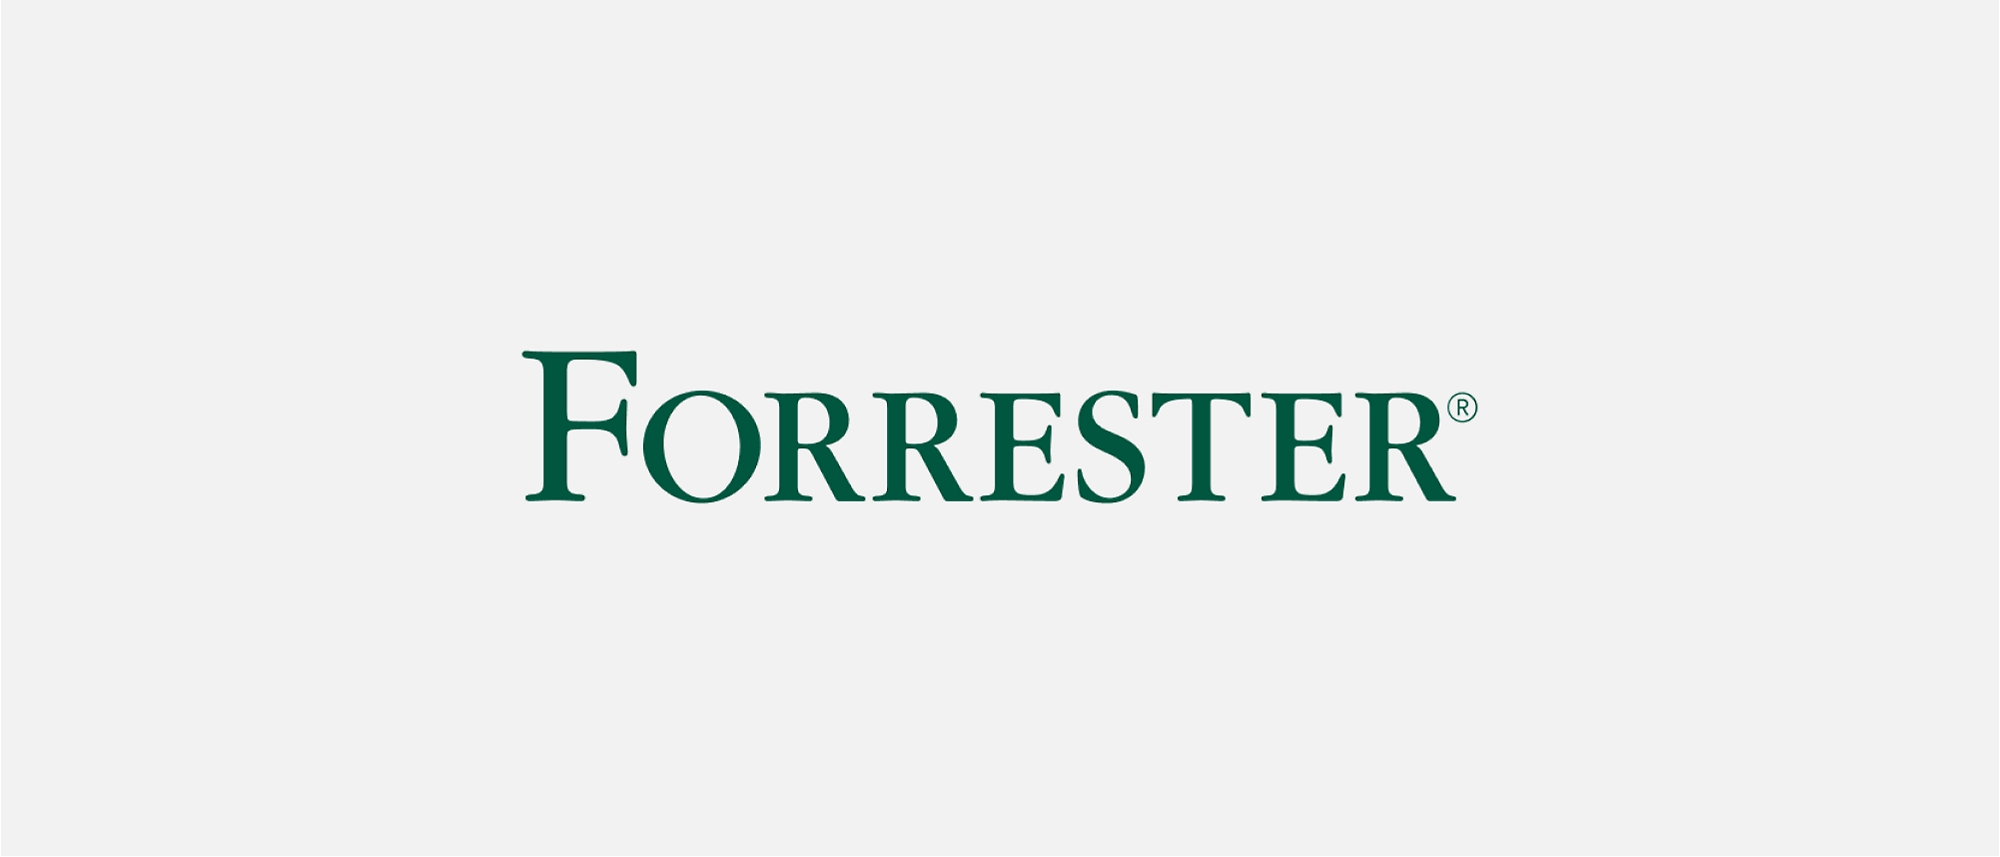 Forester-Logo